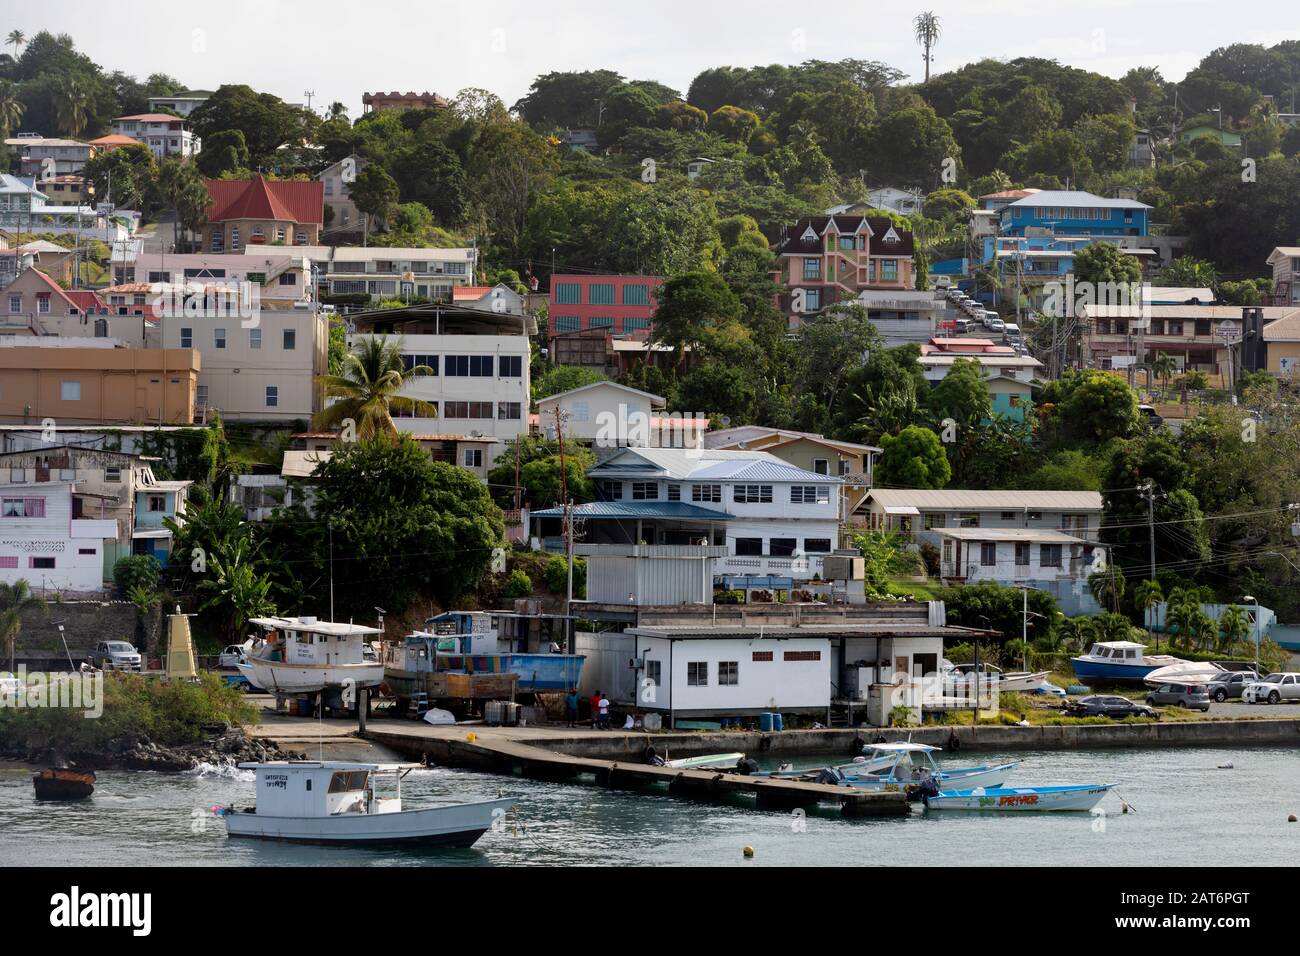 Houses on the waterfront, Scarborough, Tobago, Trinidad and Tobago Stock Photo